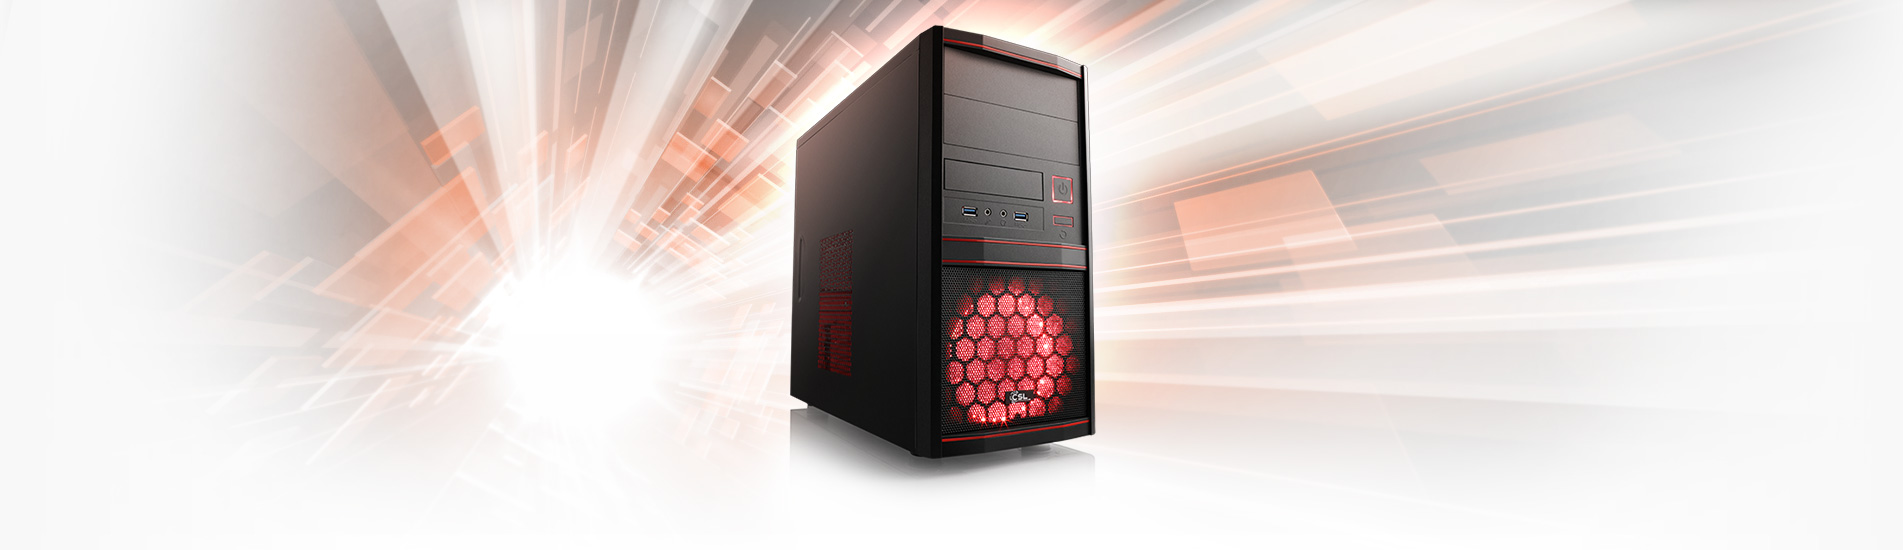 Un potente PC todoterreno con procesador Ryzen™ 5 PRO 4650G para ofimática, multimedia y juegos básicos.